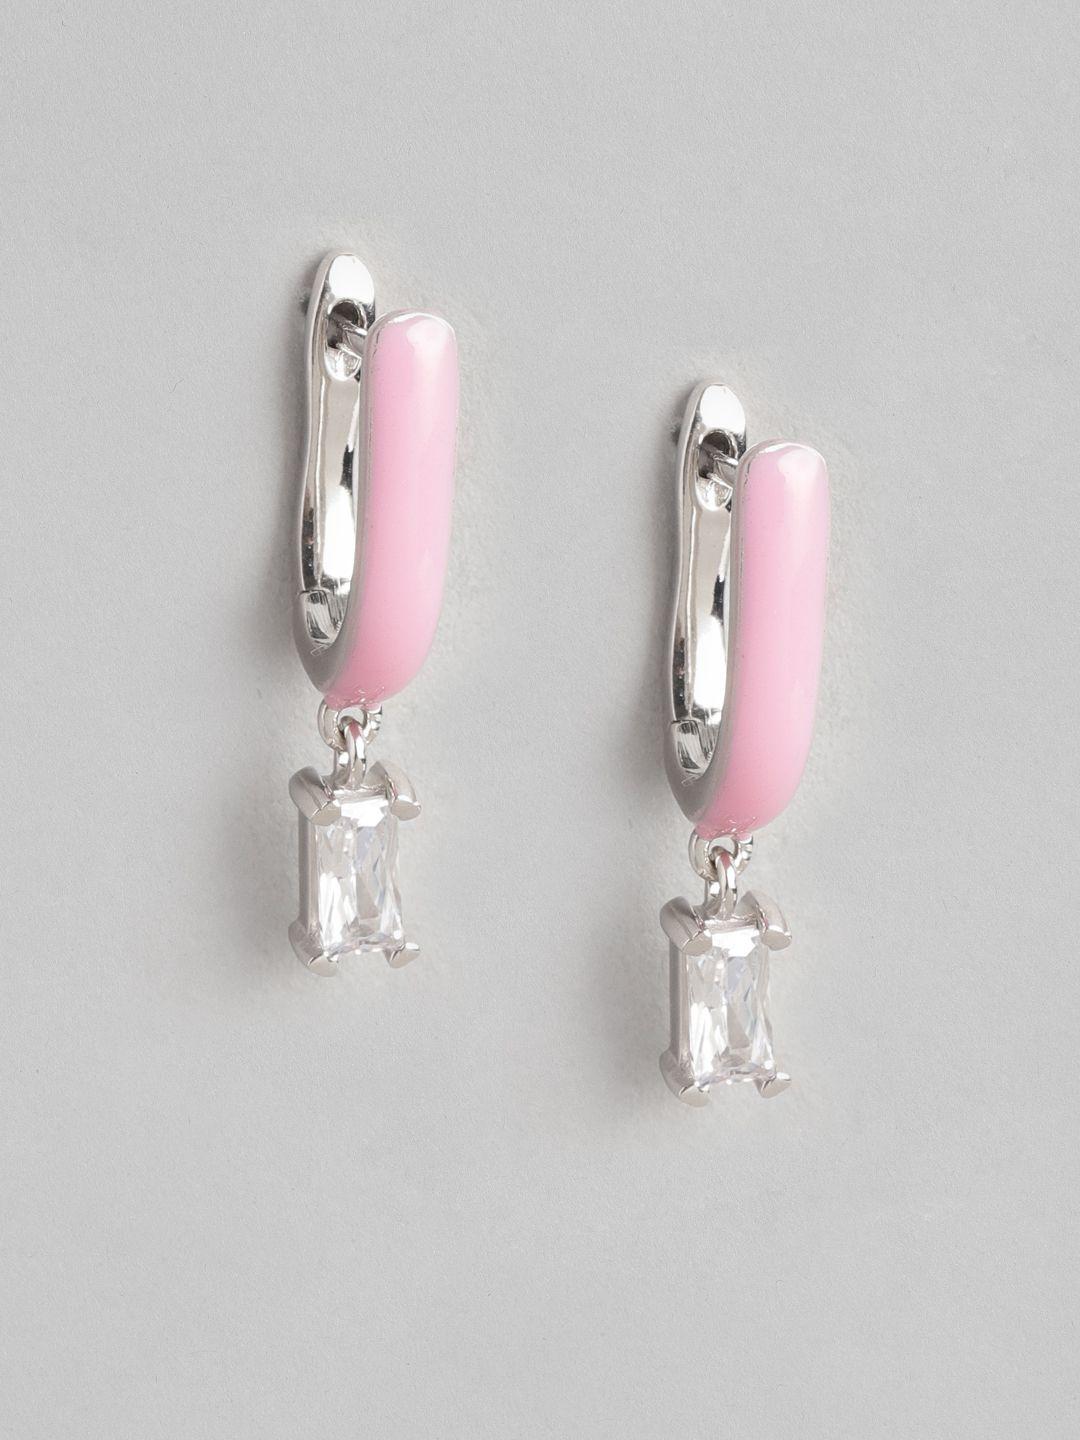 carlton london contemporary enamelled drop earrings